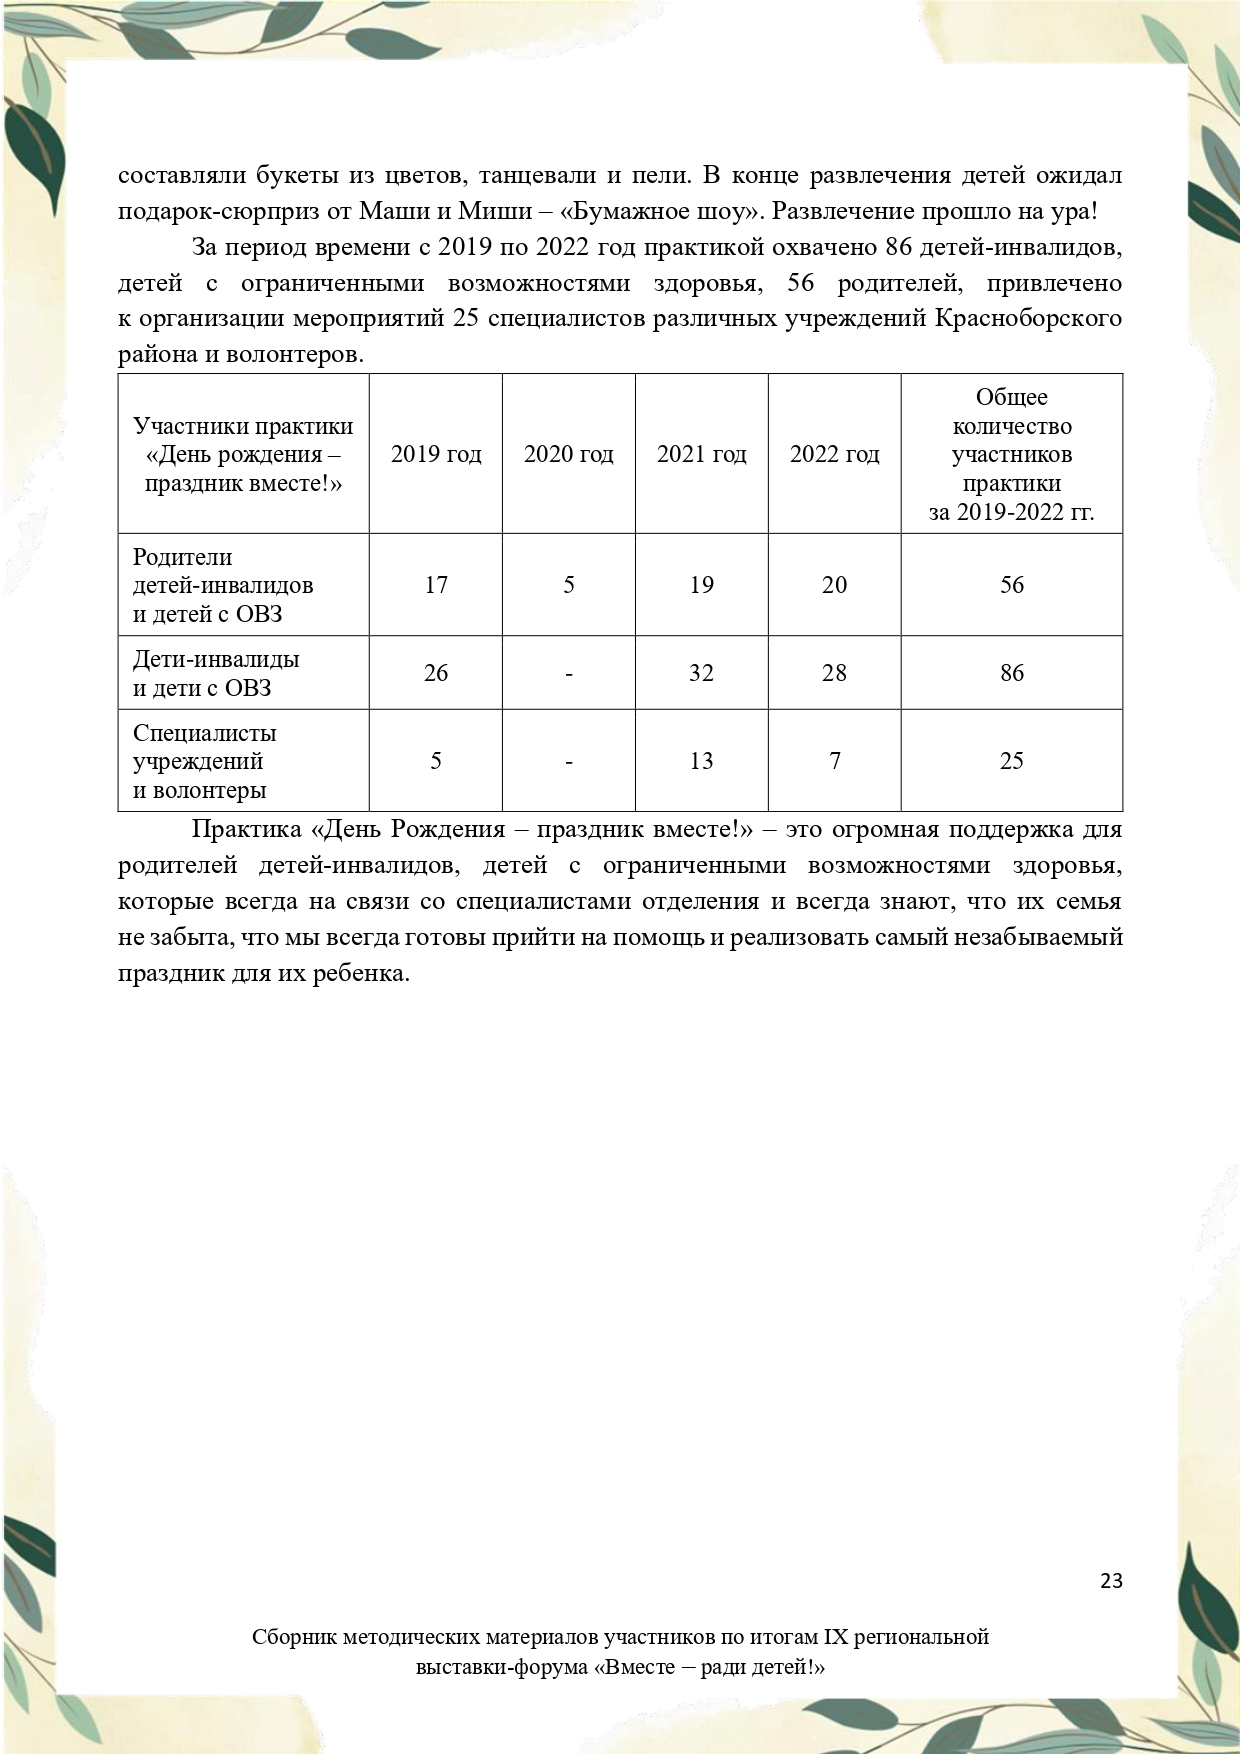 Sbornik_metodicheskikh_materialov_uchastnikov_IX_regionalnoy_vystavki-foruma_Vmeste__radi_detey_33__2023_page-0023